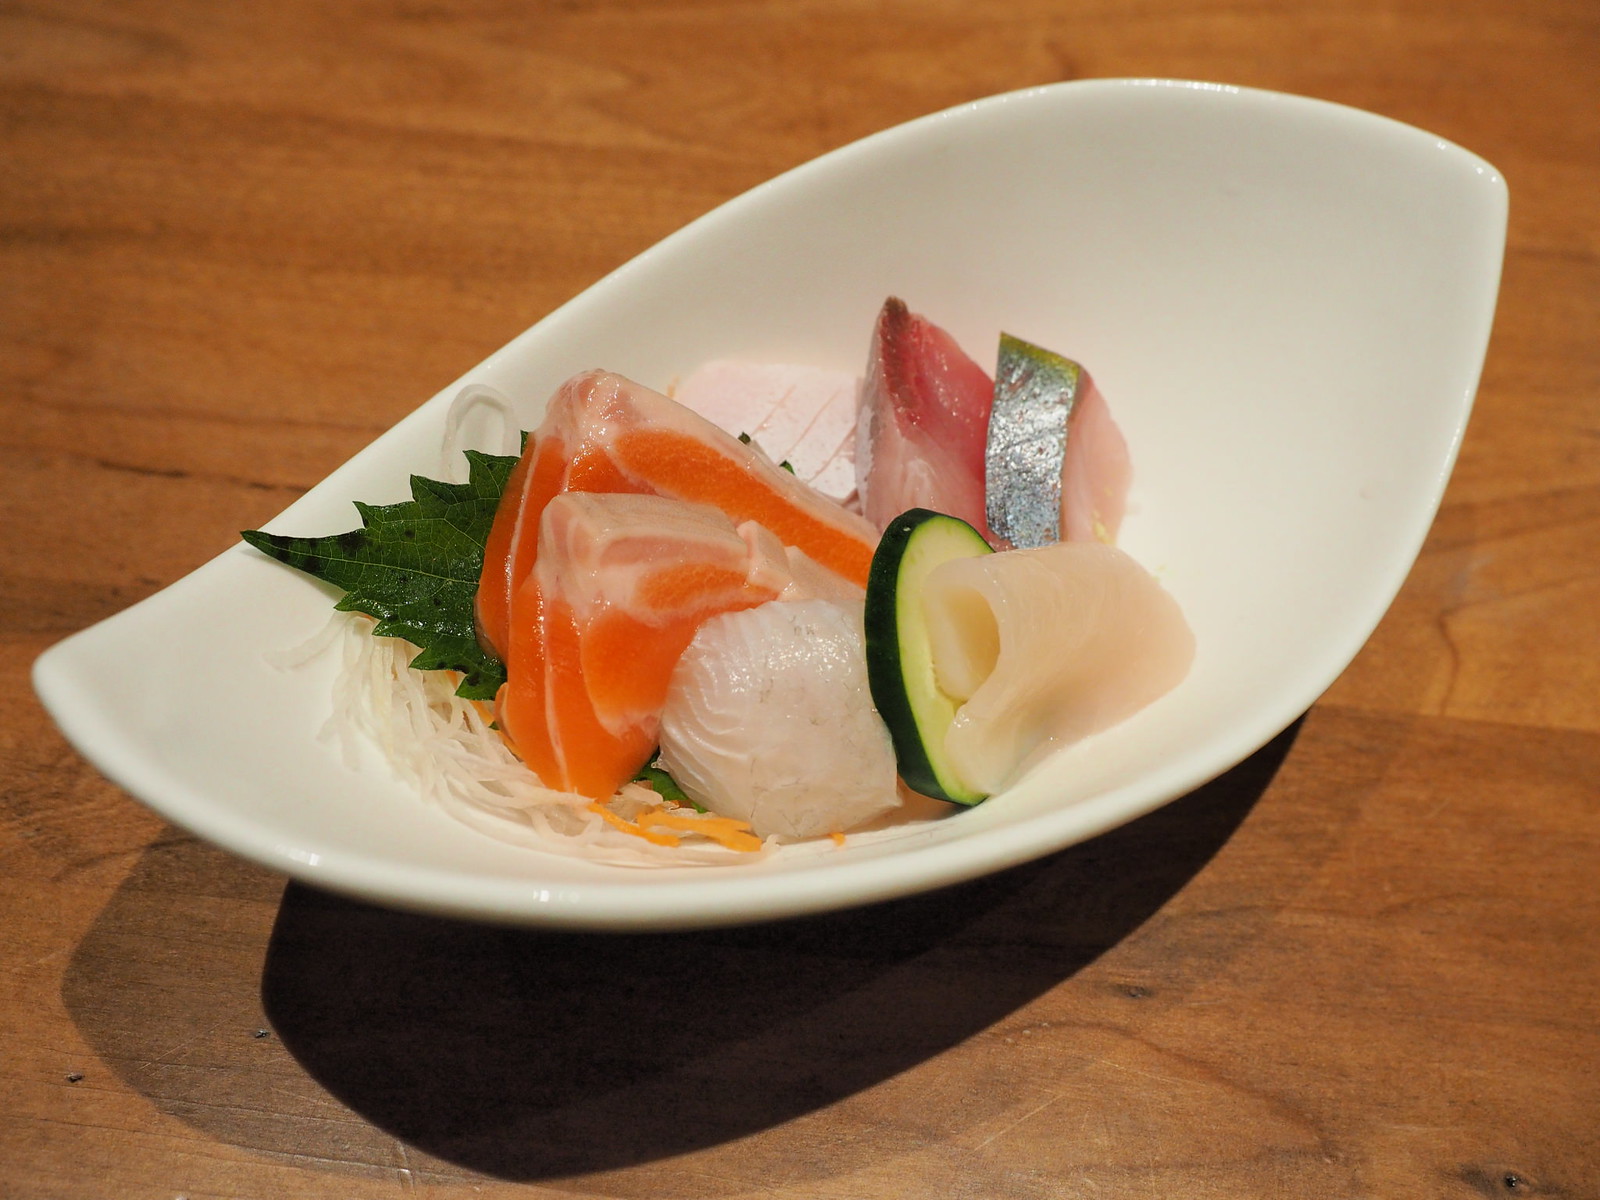 Sashimi from the dinner set of Uroko Japanese Cuisine